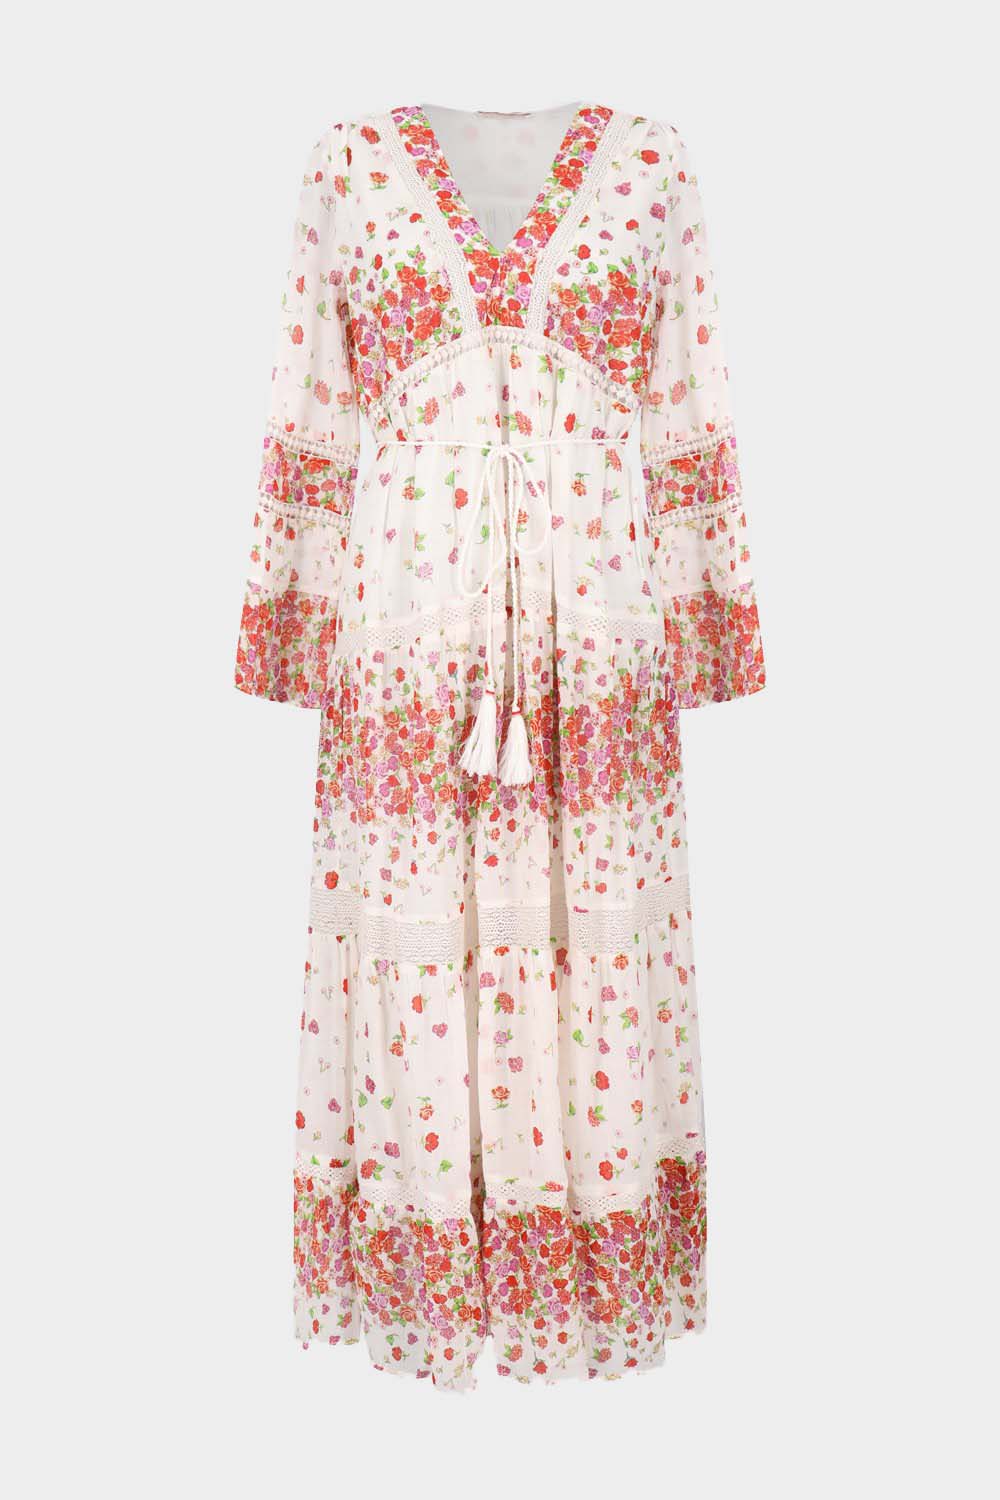 שמלת SOPHIE לנשים הדפס פרחוני RENE DERHY Vendome online | ונדום .